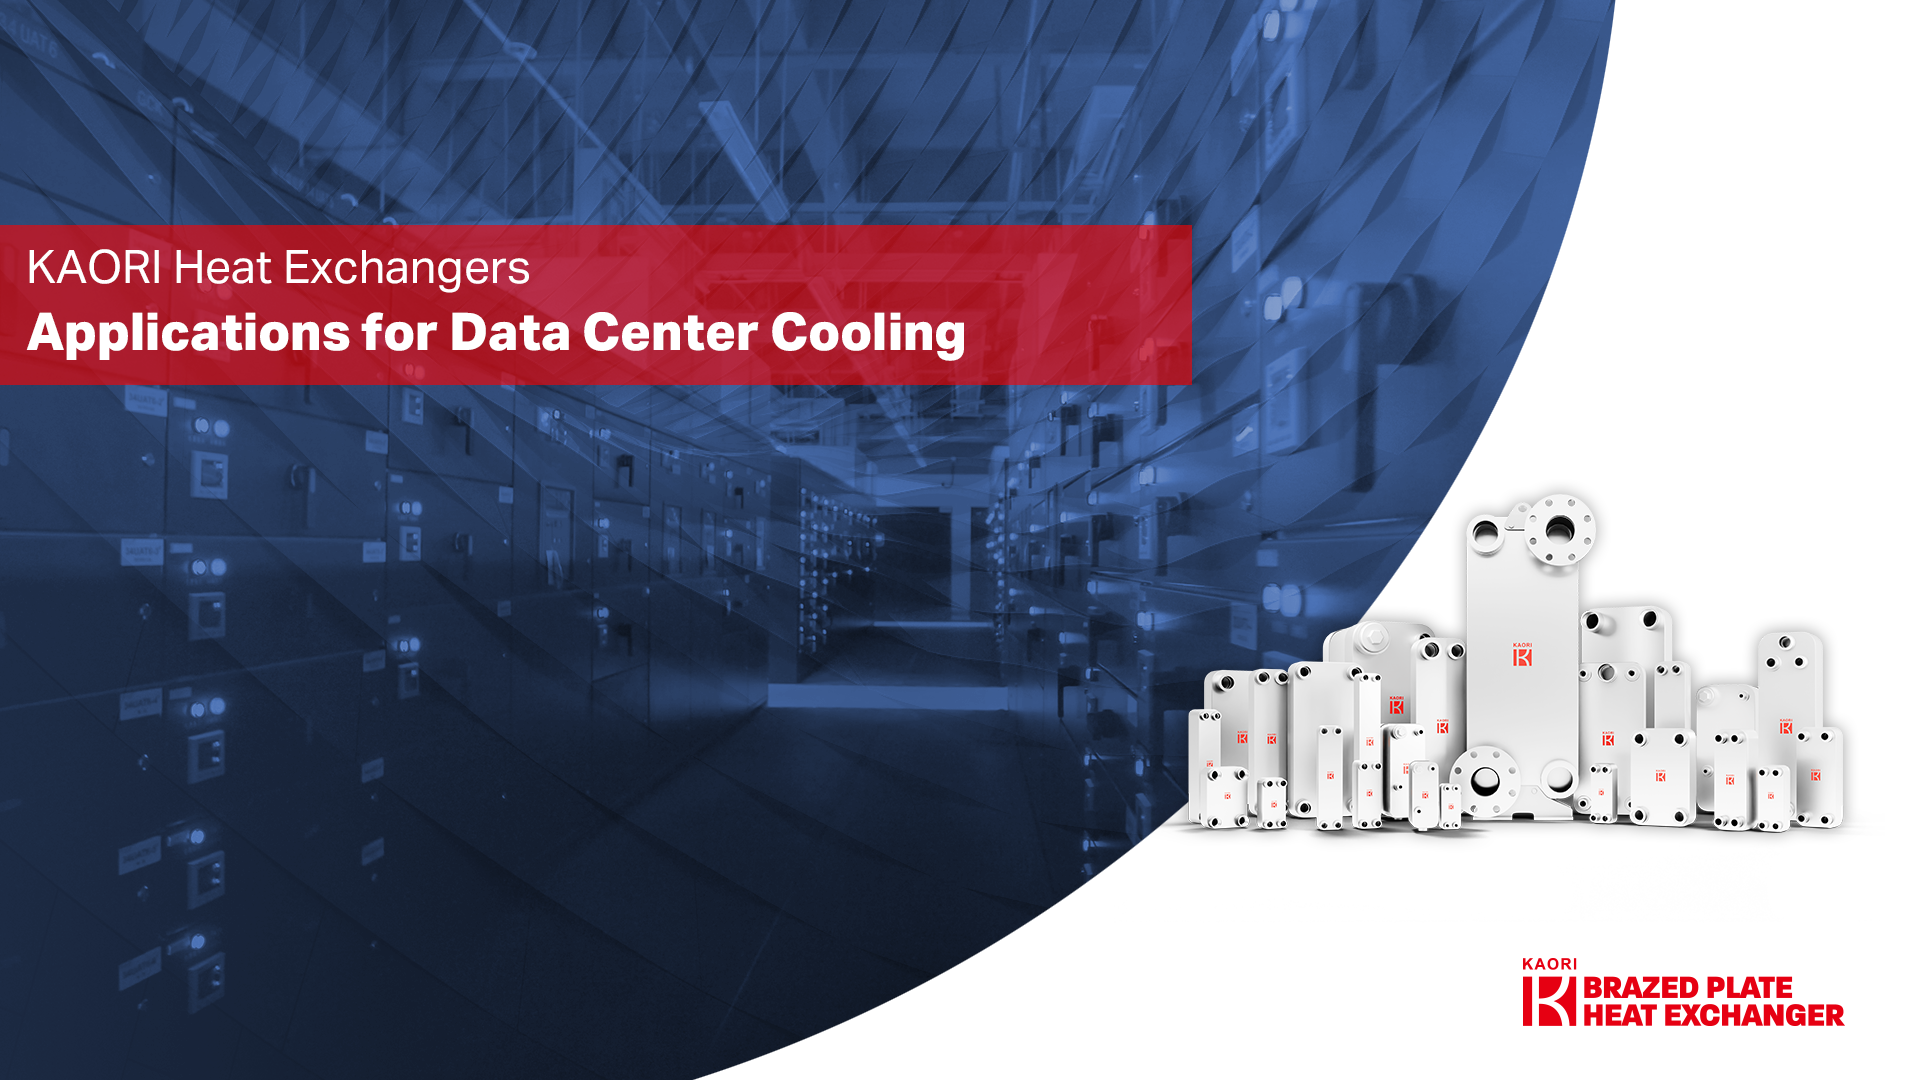  硬銲型板式熱交換器於資料中心行業應用 